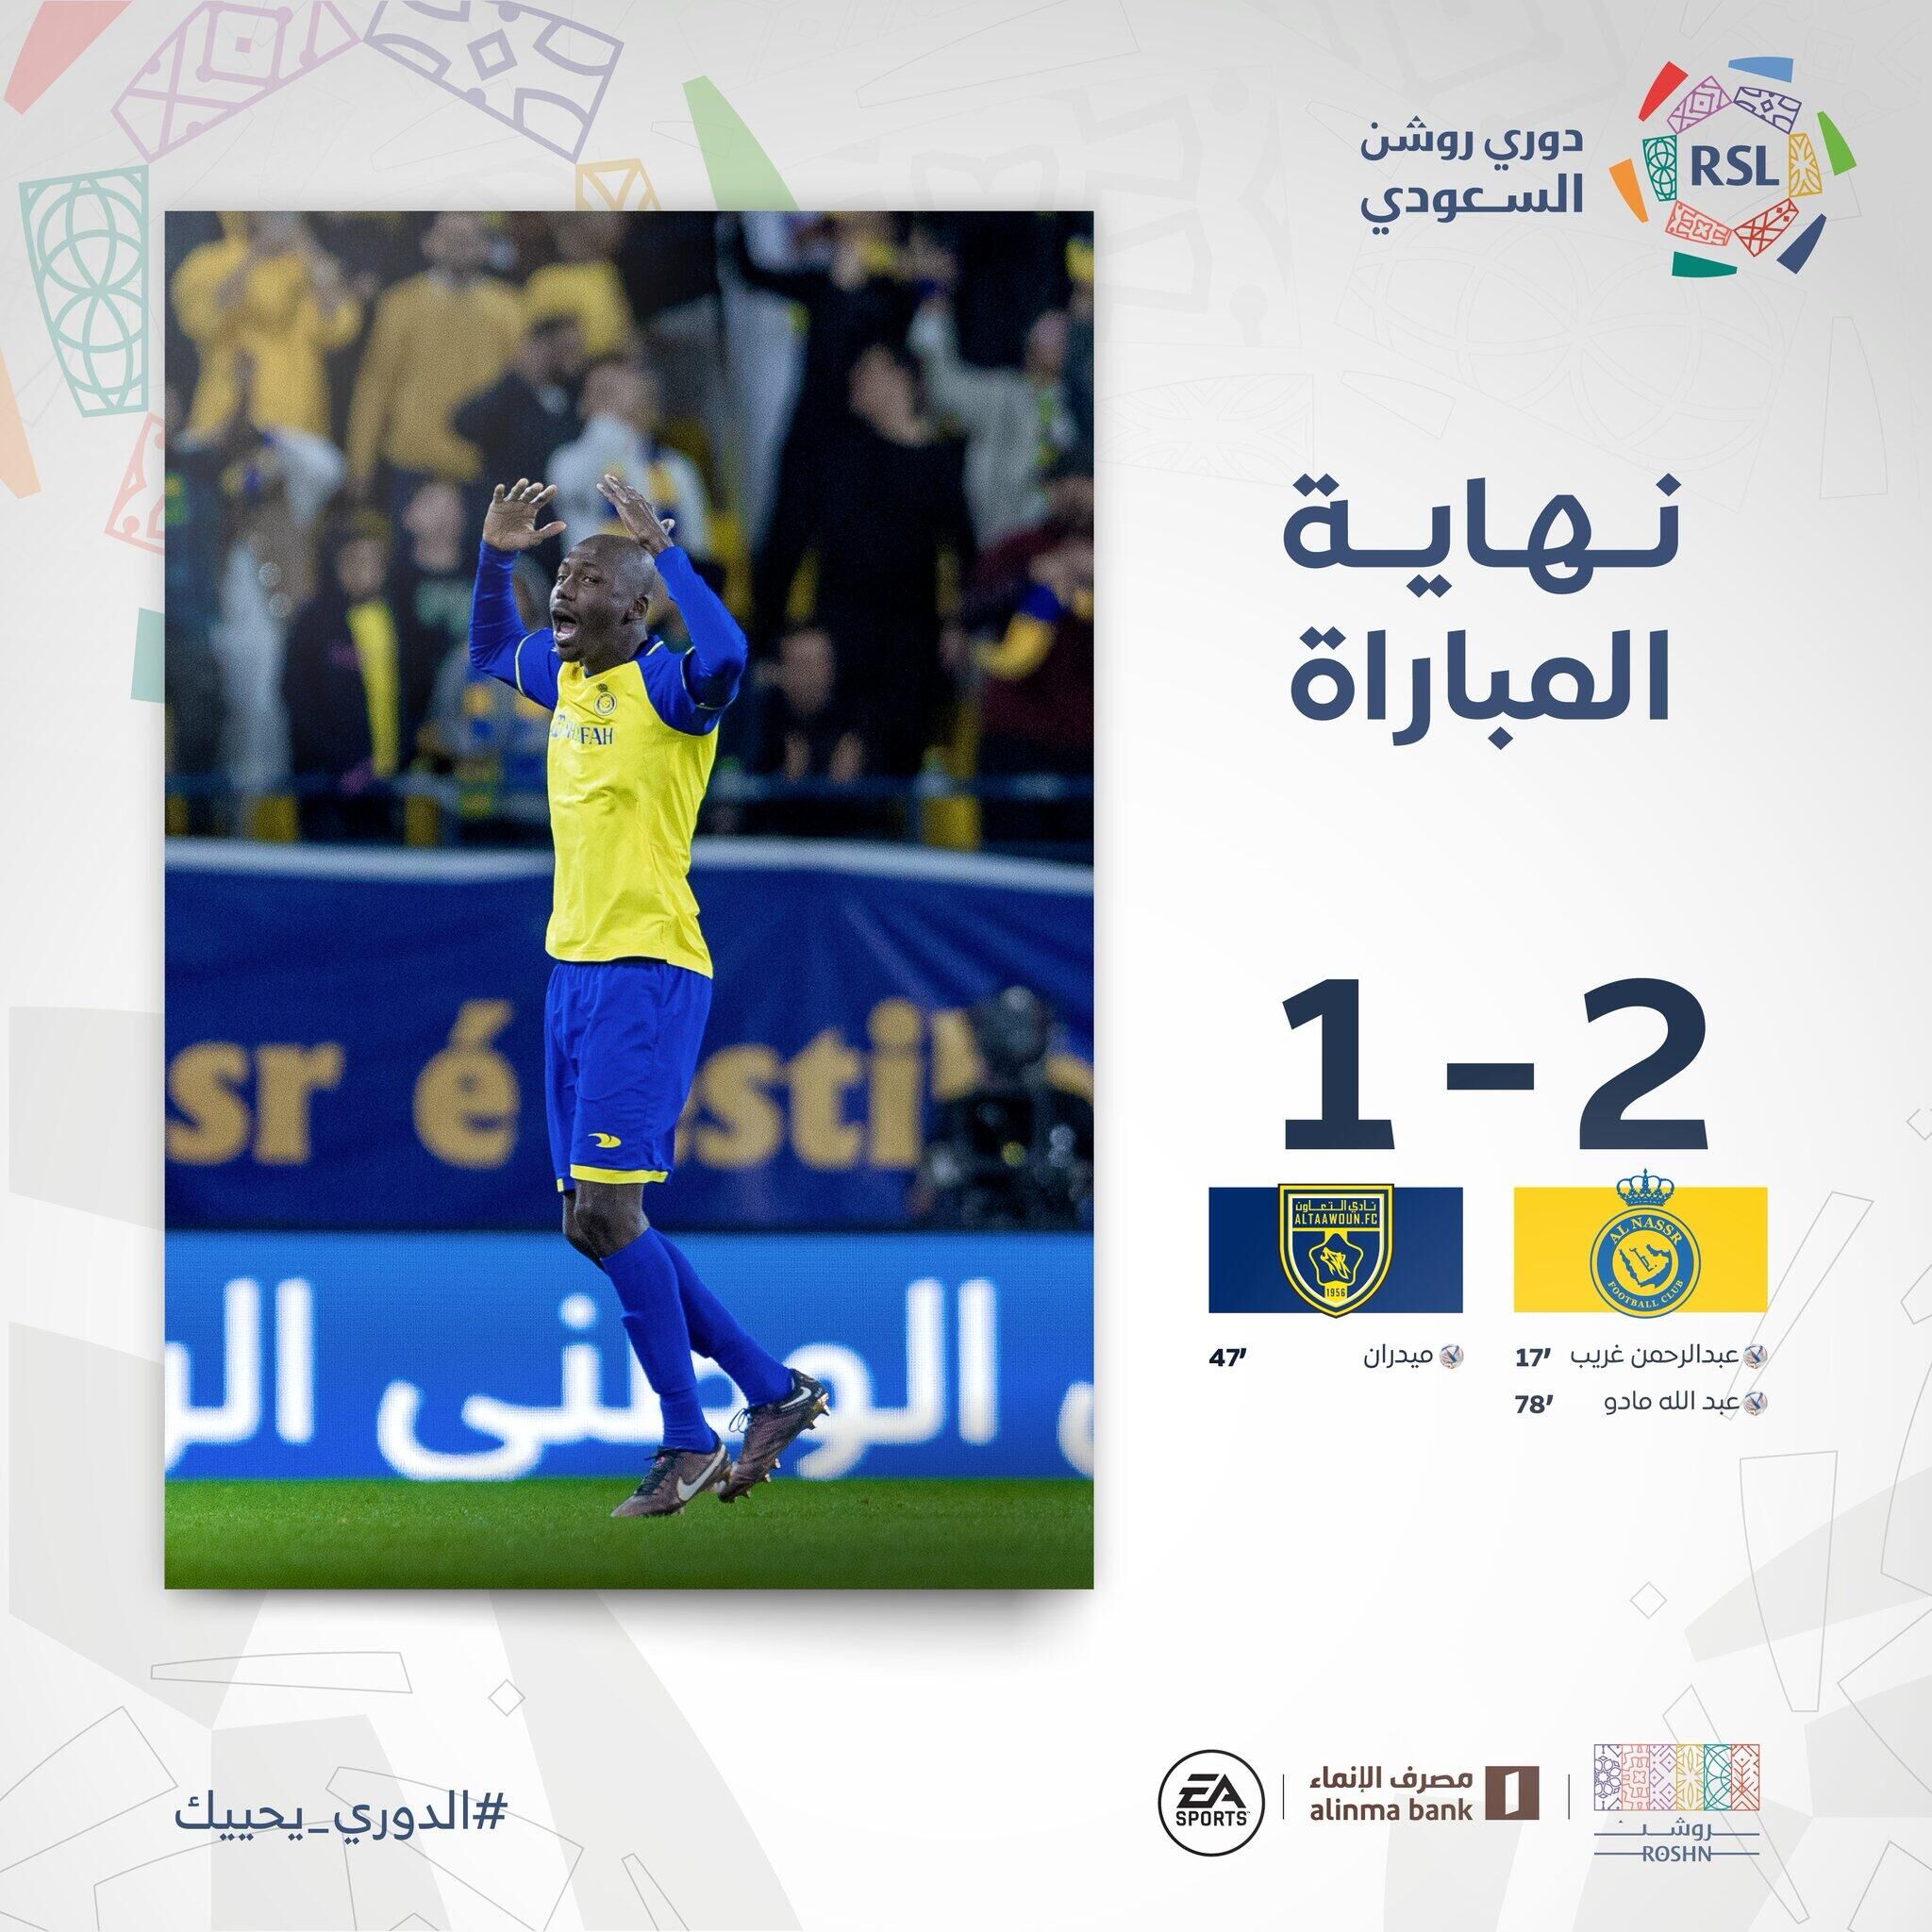 沙特联-C罗助攻双响近3场造7球 利雅得胜利2-1布赖代合作